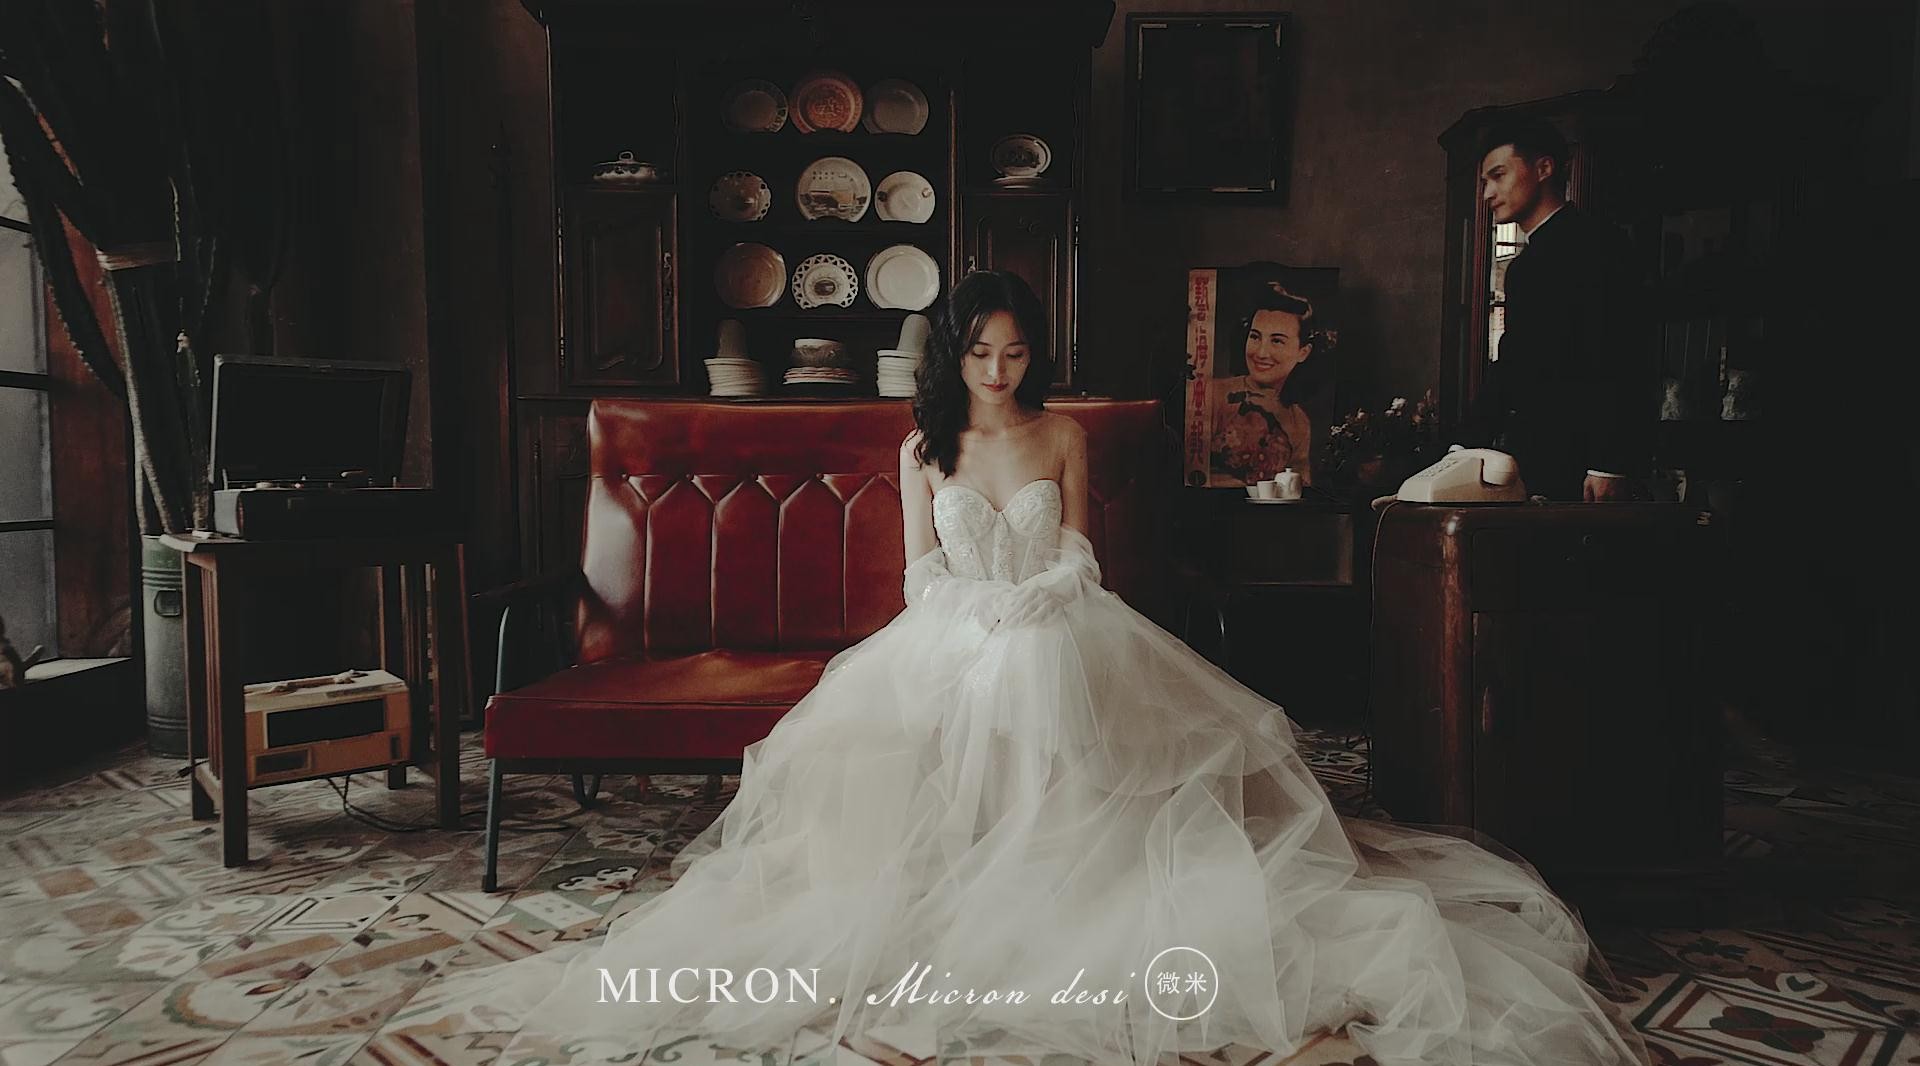 「一辈子的爱情」婚礼MV | 微米空间影像出品 